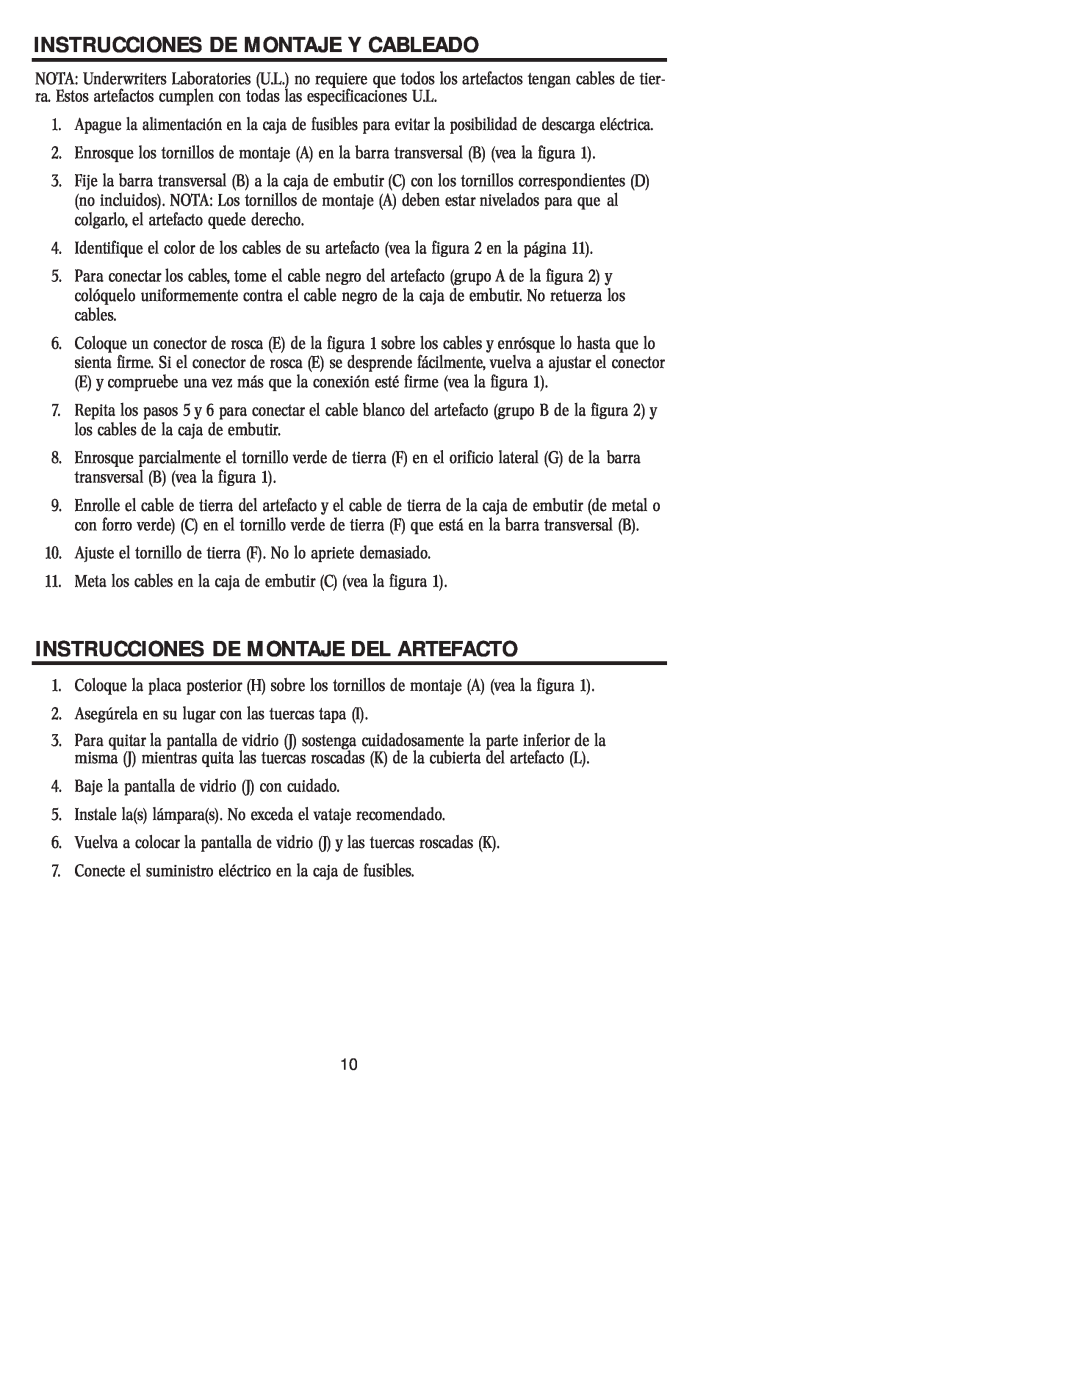 Westinghouse W-007 owner manual Instrucciones De Montaje Y Cableado, Instrucciones De Montaje Del Artefacto 